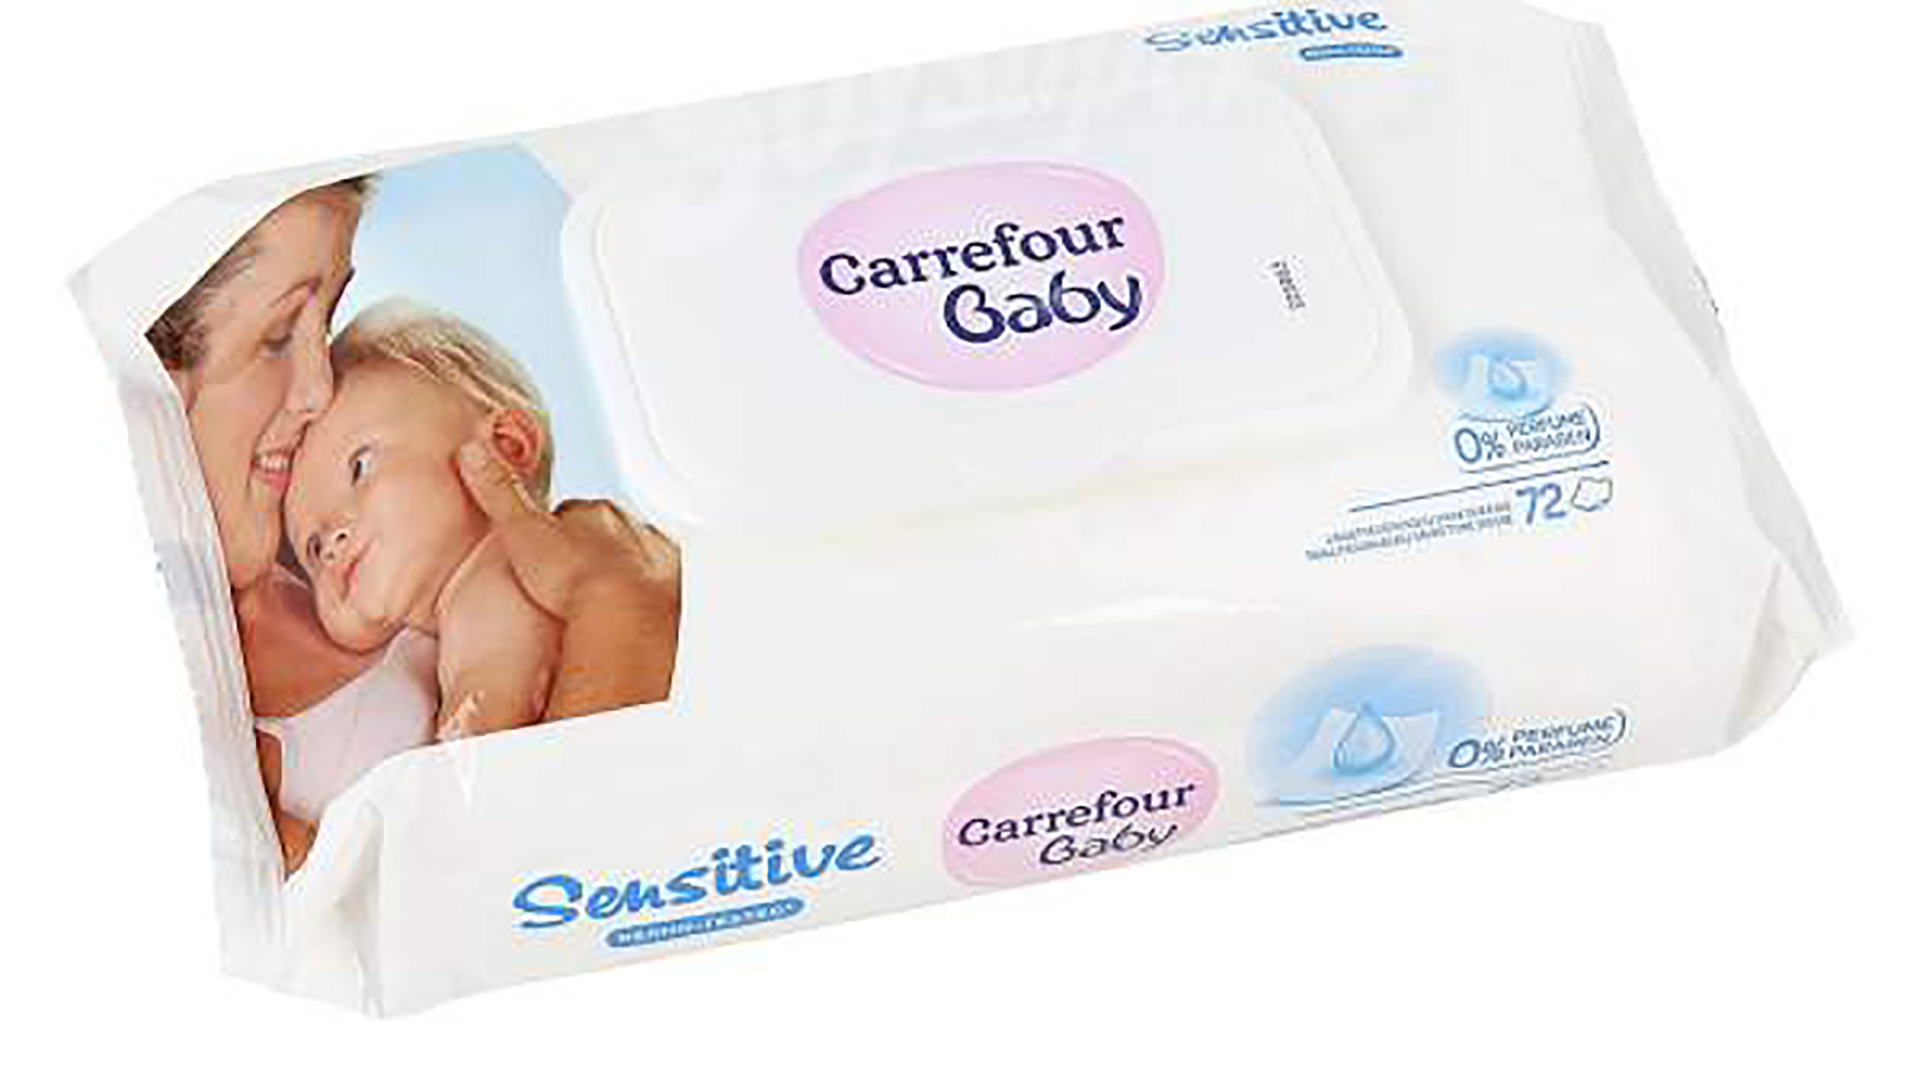 Carrefour retira unas toallitas para bebés contaminadas por una bacteria